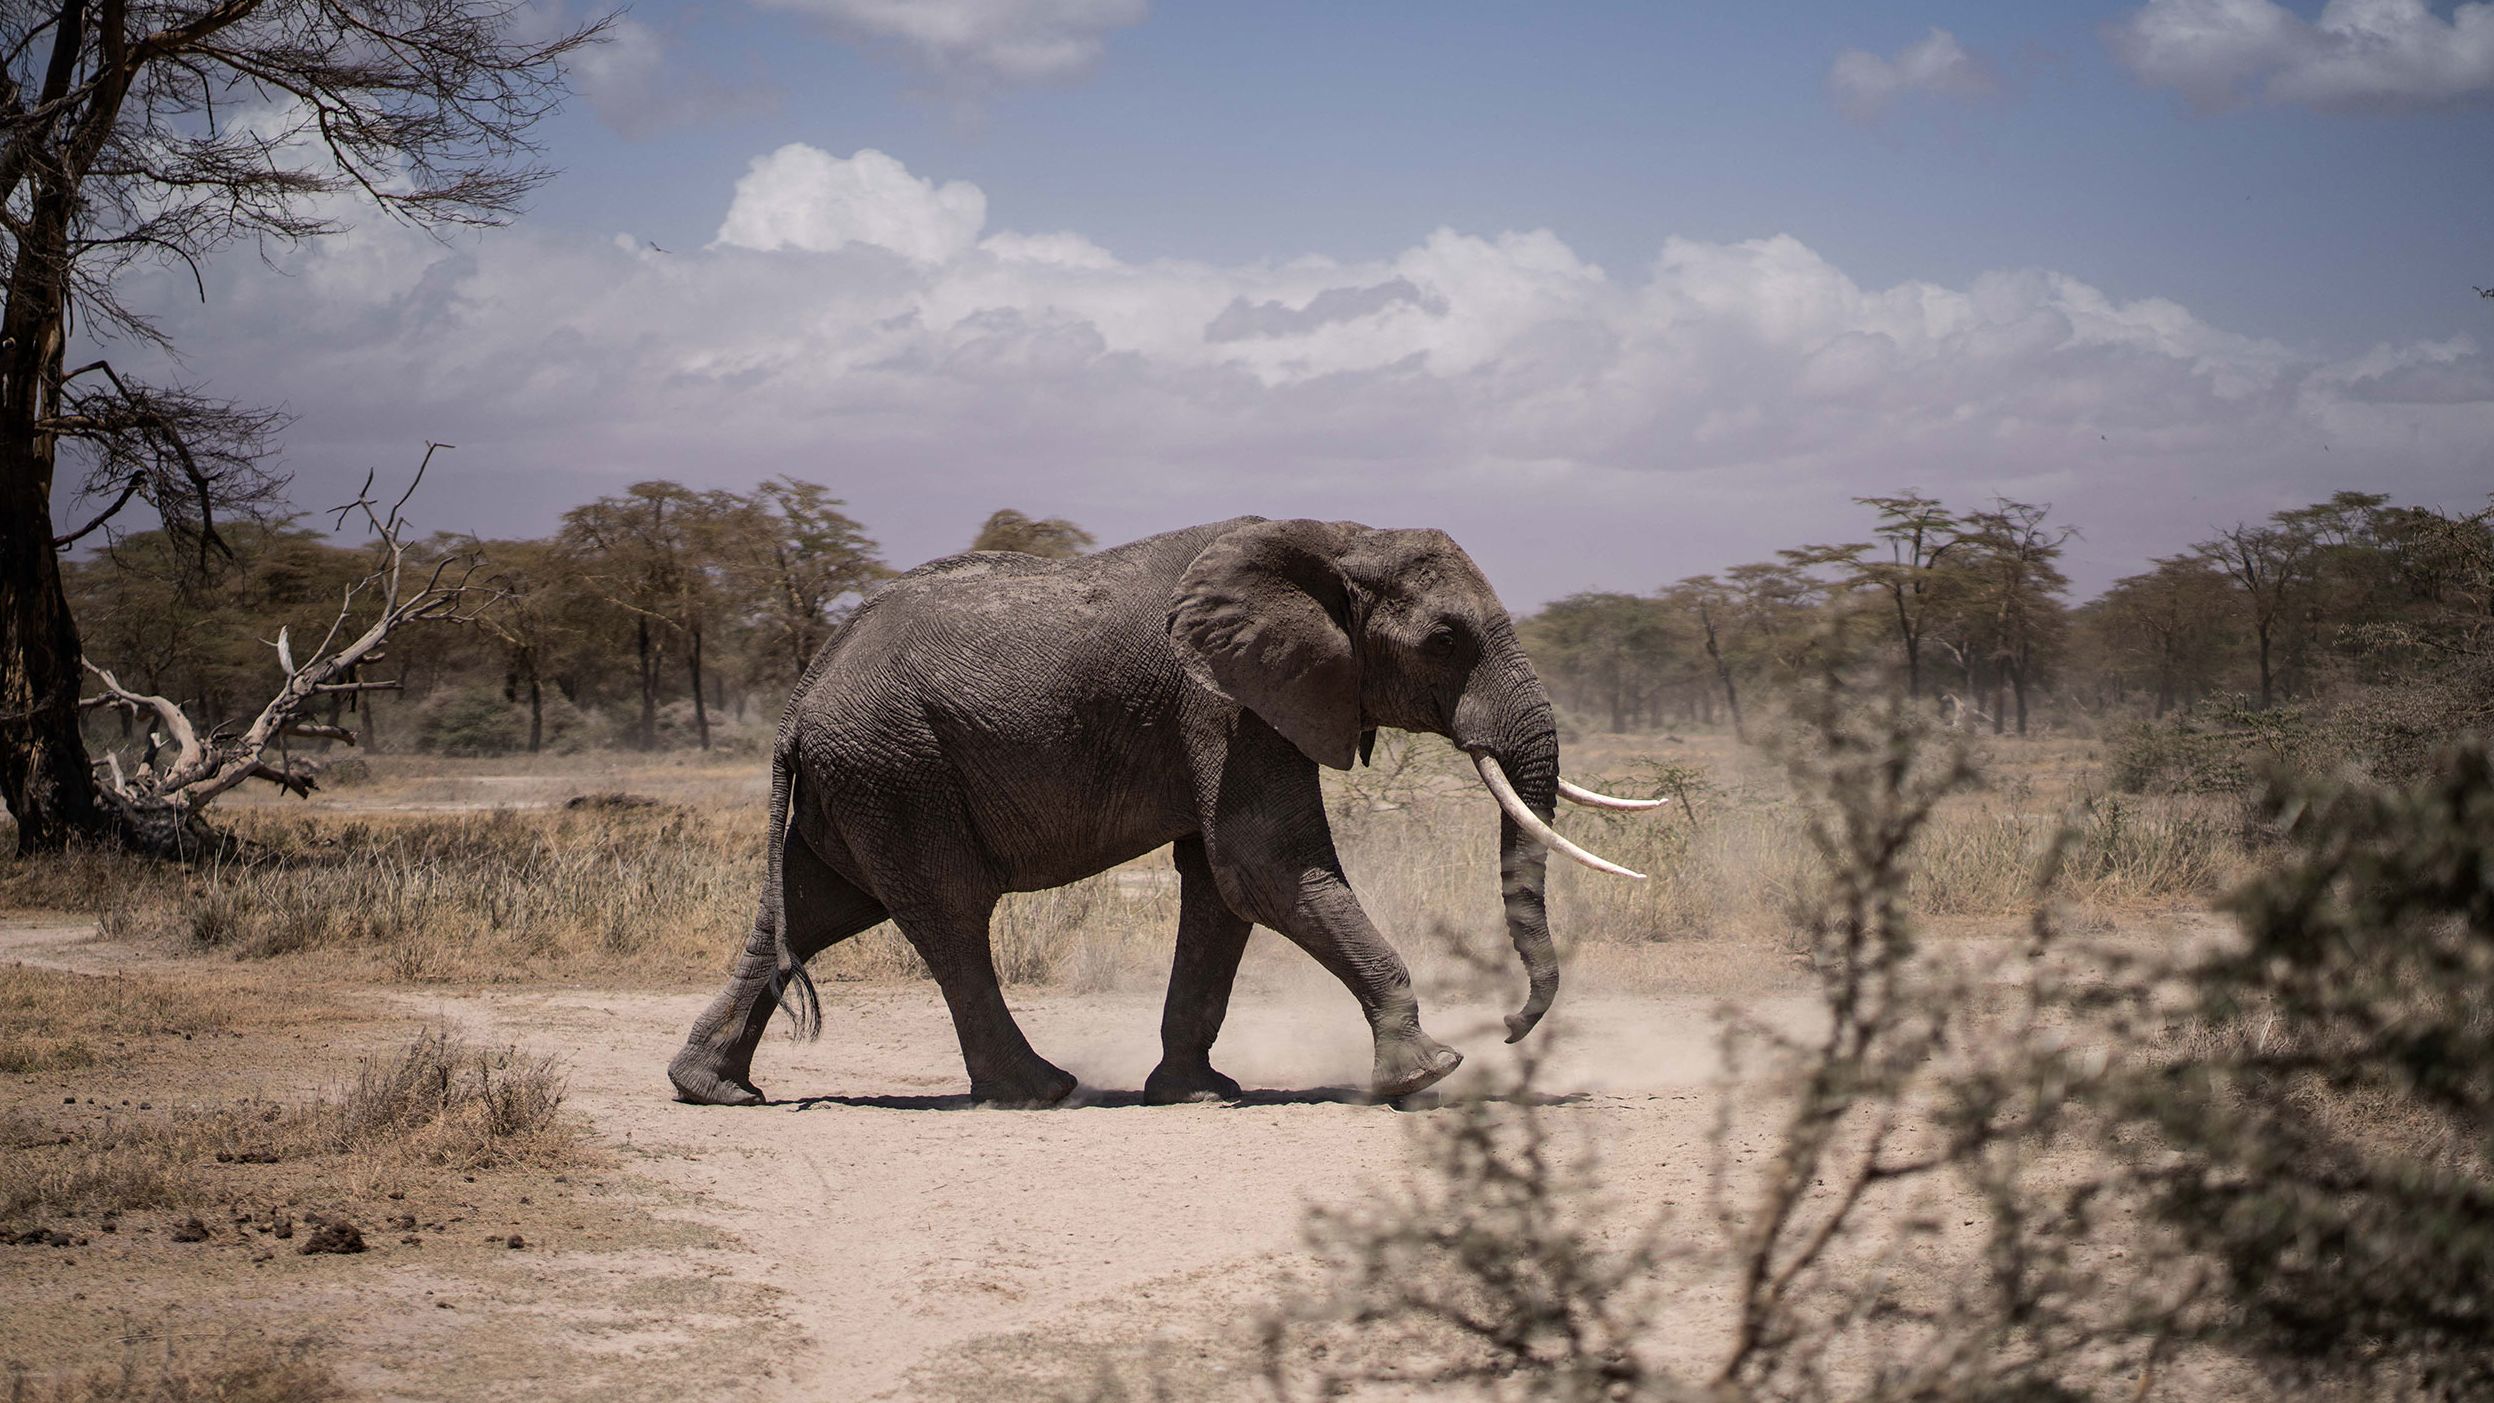 An elephant walking towards a nearby river in the Kimana Sanctuary in Kajiado, Kenya, on September 25, 2022.